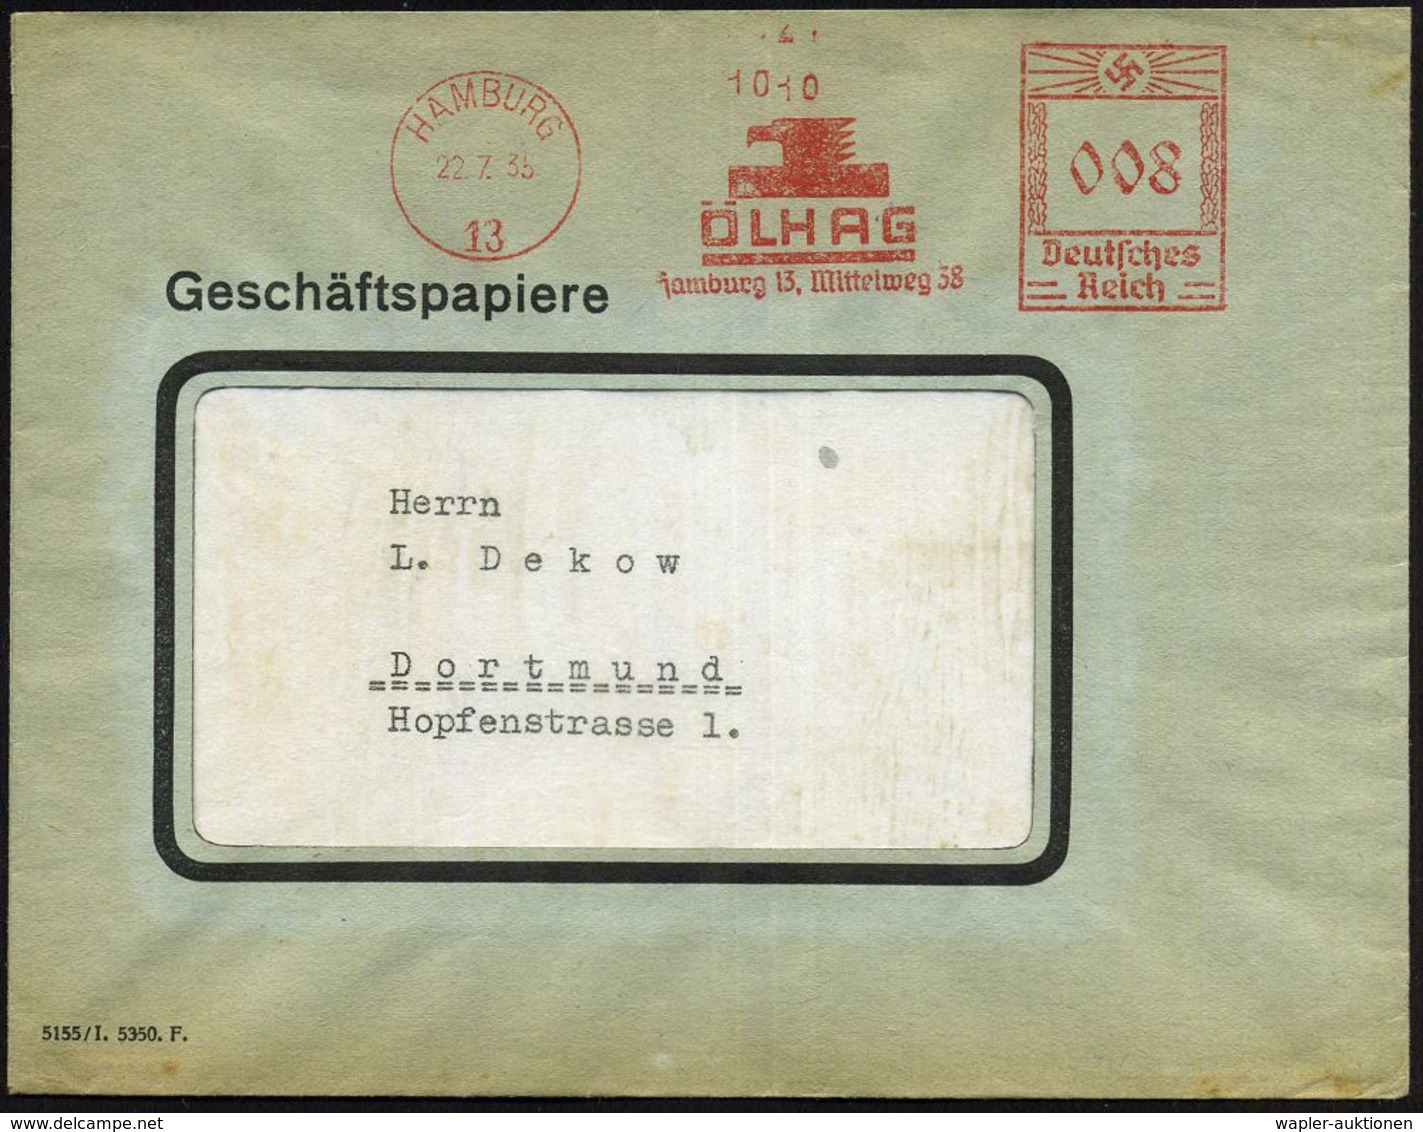 HAMBURG/ 13/ ÖLHAG.. 1935 (22.7.) AFS (Adlerkopf-Logo) Inl.-Bf. (Dü.E-3BAh) - CHEMIE / PRODUKTE / CHEMISCHE INDUSTRIE -  - Chemie